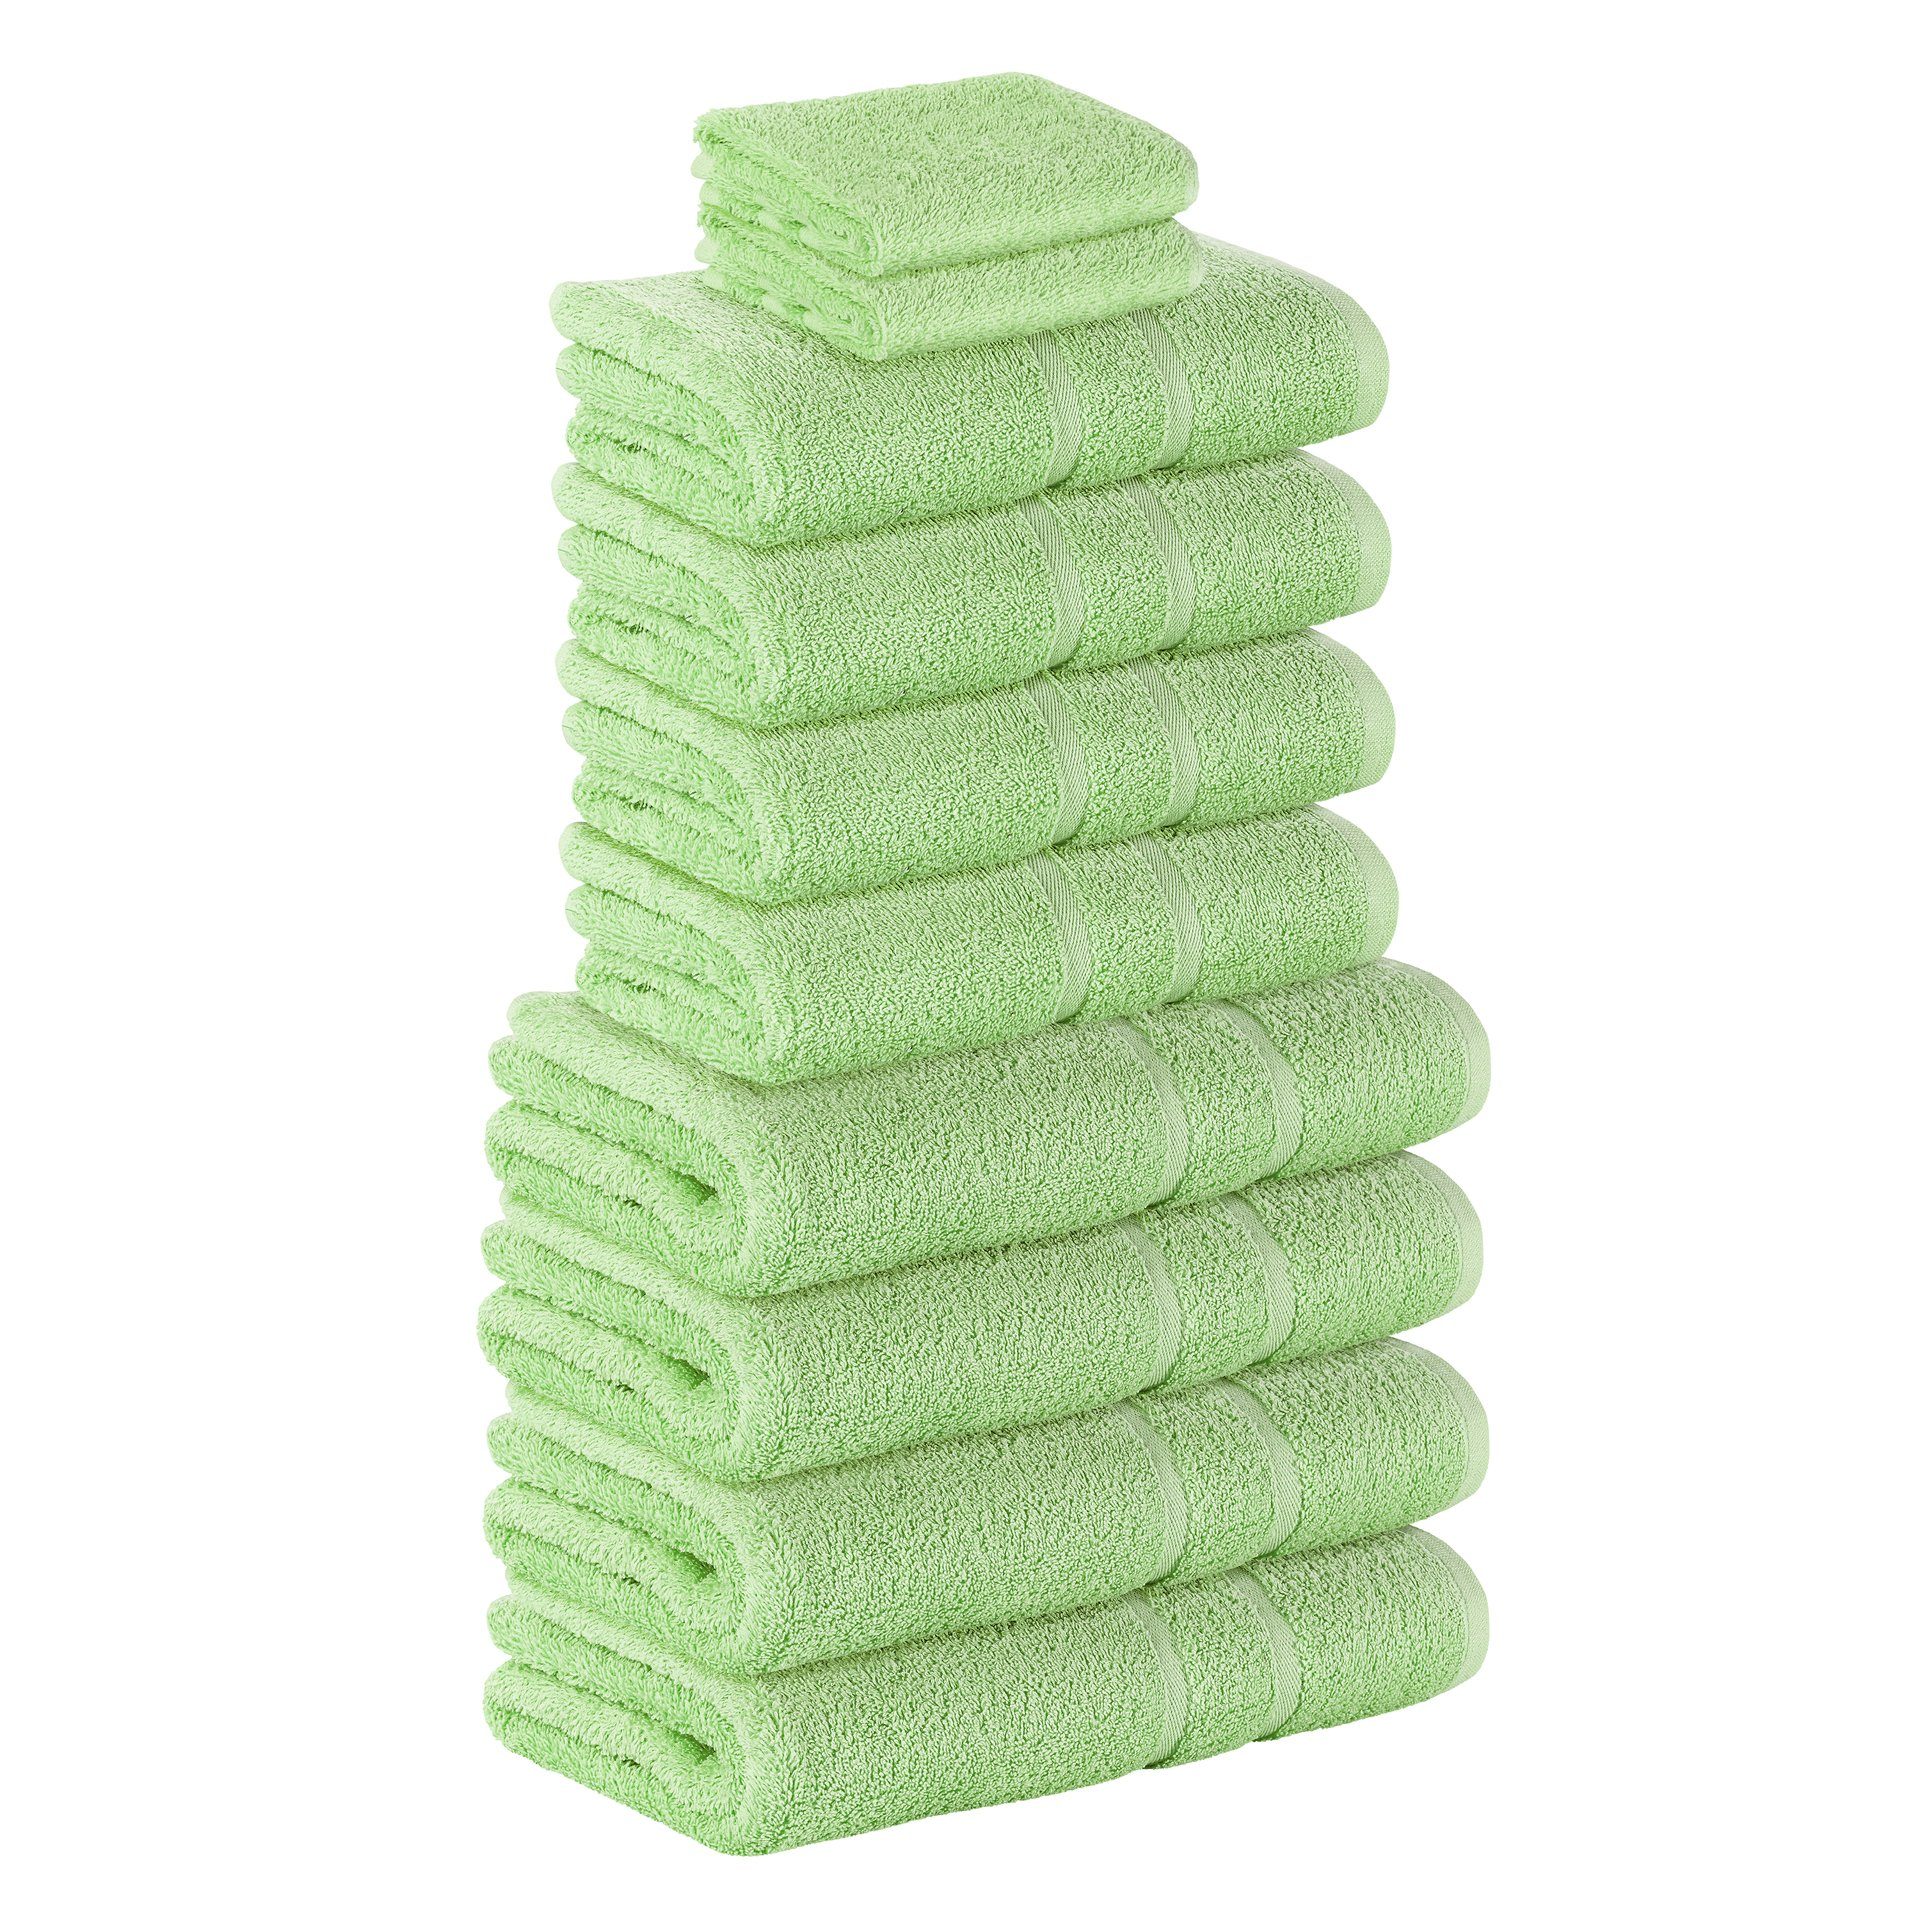 StickandShine Handtuch Set 2x Gästehandtuch 4x Handtücher 4x Duschtücher als SET in verschiedenen Farben (10 Teilig) 100% Baumwolle 500 GSM Frottee 10er Handtuch Pack, (Spar-set), 100% Baumwolle 500 GSM Hellgrün